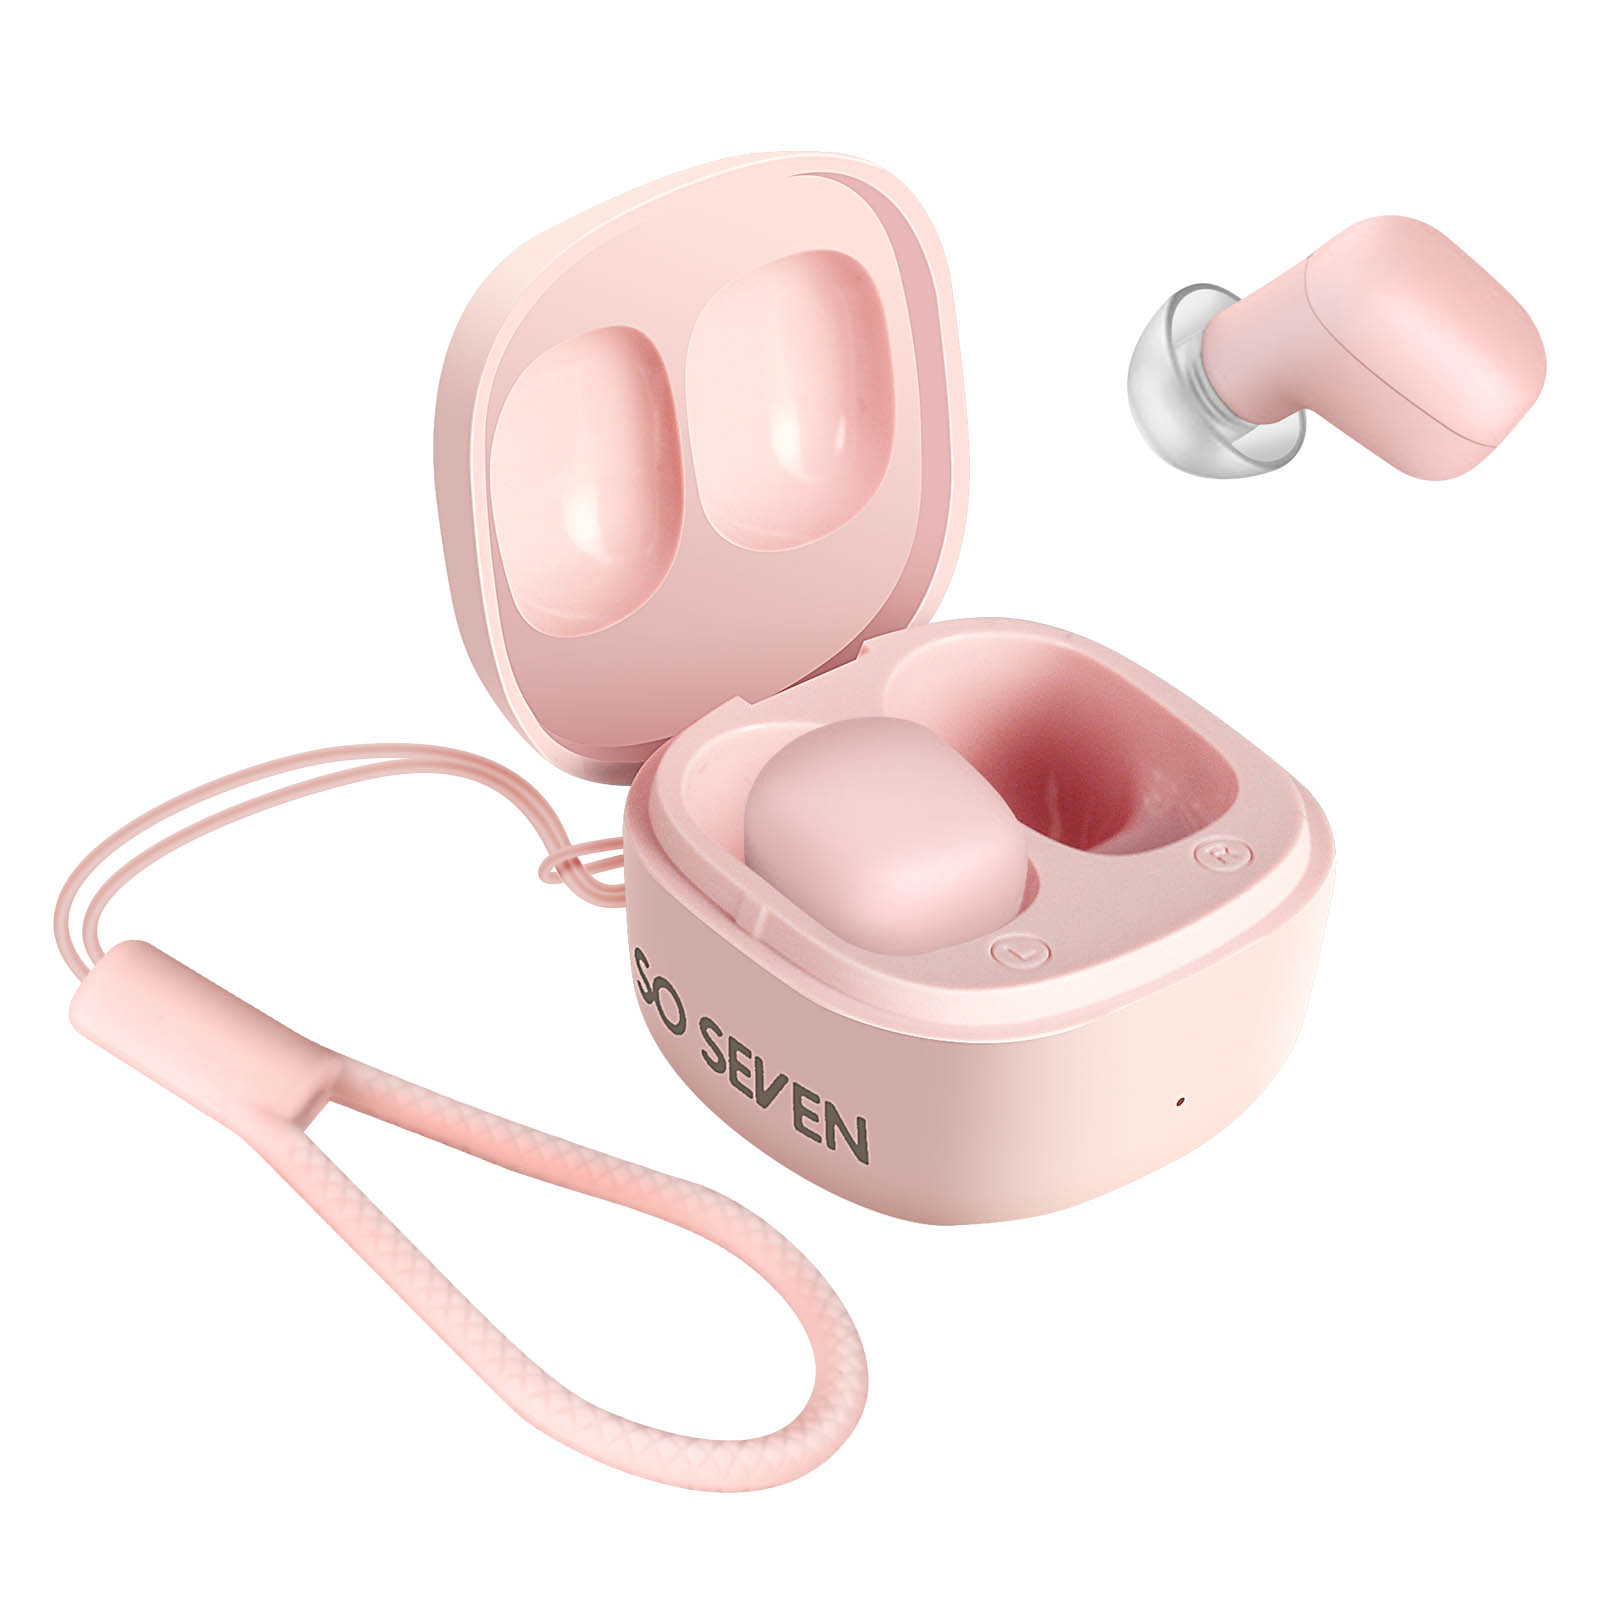 SO SEVEN Kopfhörer 20 Gesamthördauer Bluetooth Std. Bluetooth 5.3